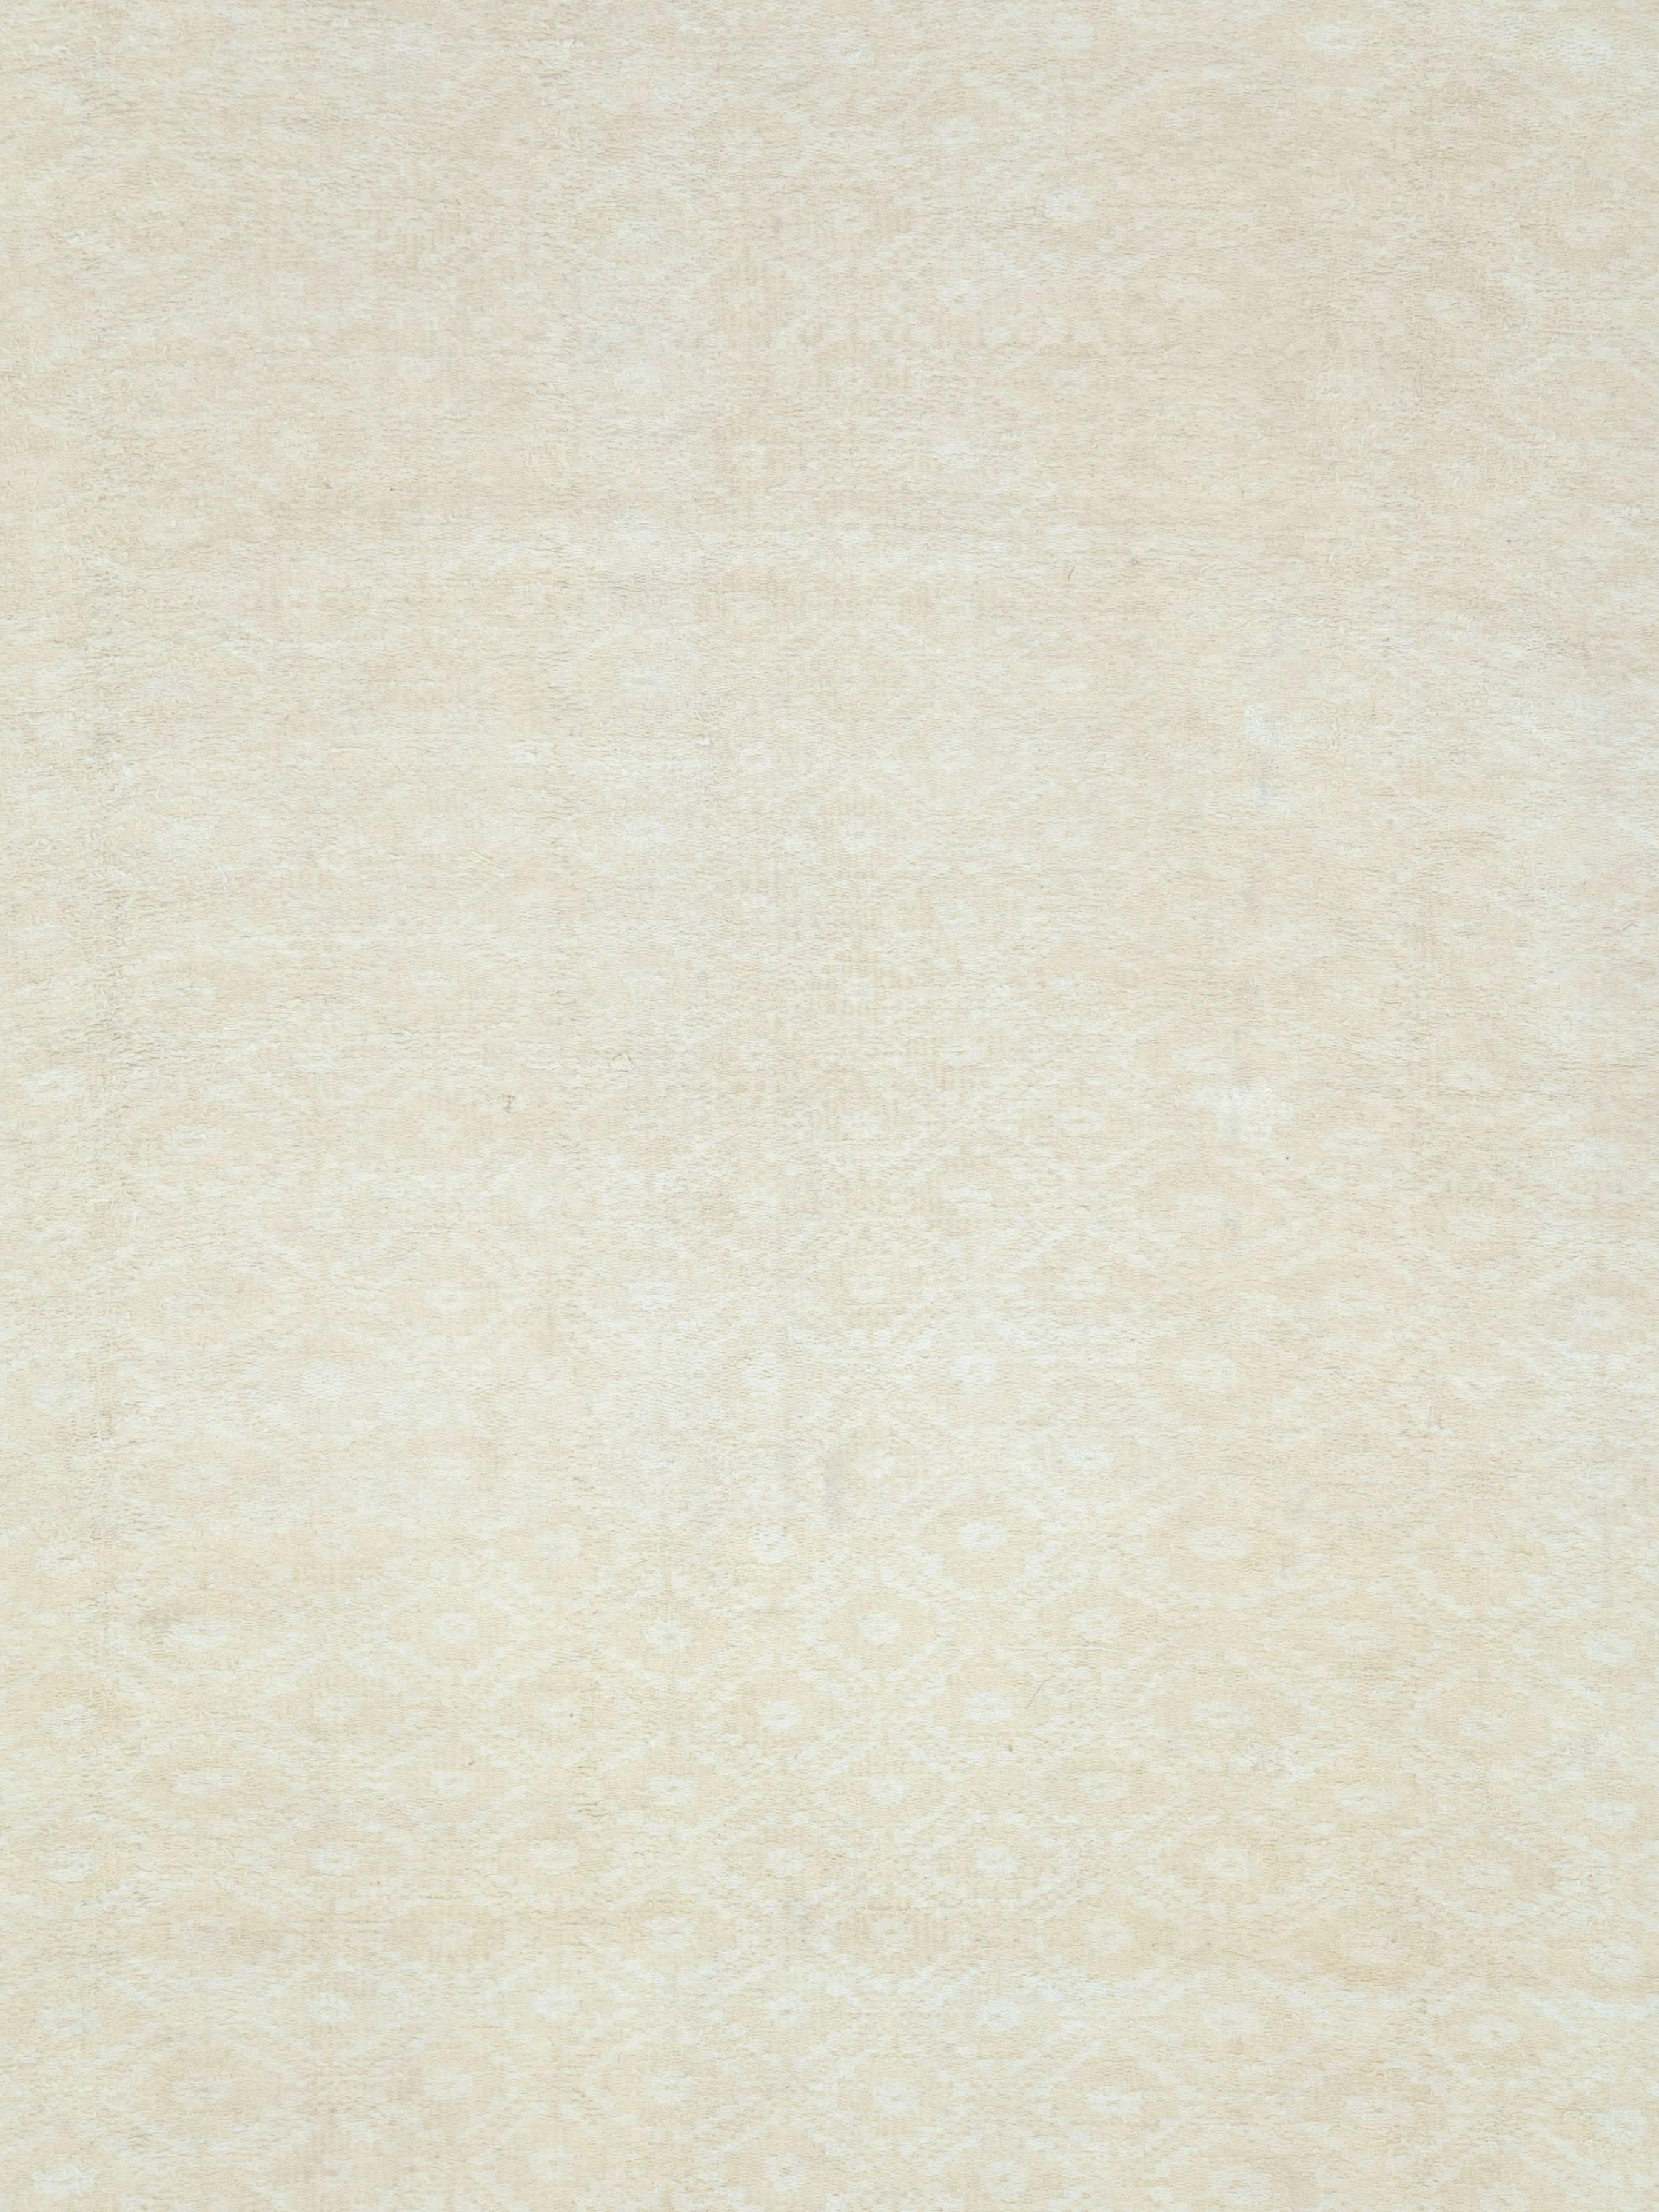 Un tapis persan vintage tissé à plat du milieu du 20e siècle.

Mesures : 9' 7